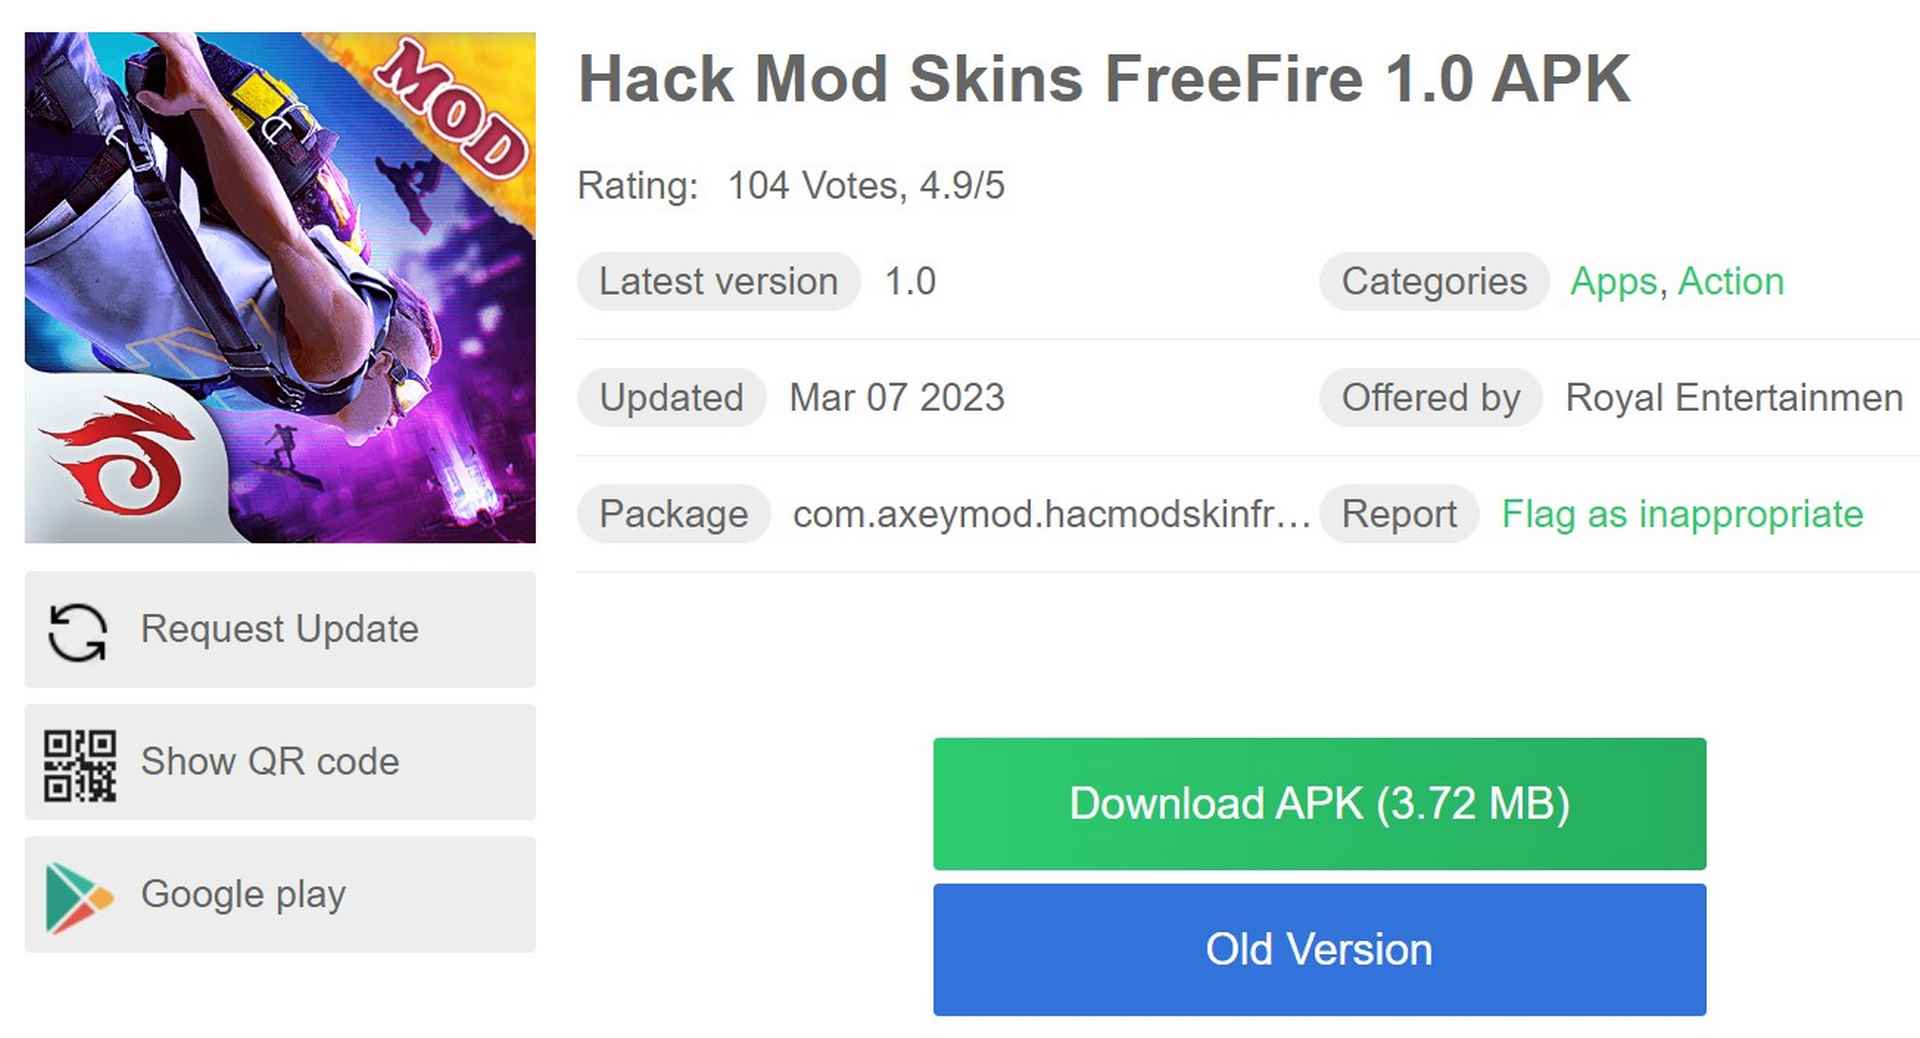 Mod Skins FreeFire 1.0 APK